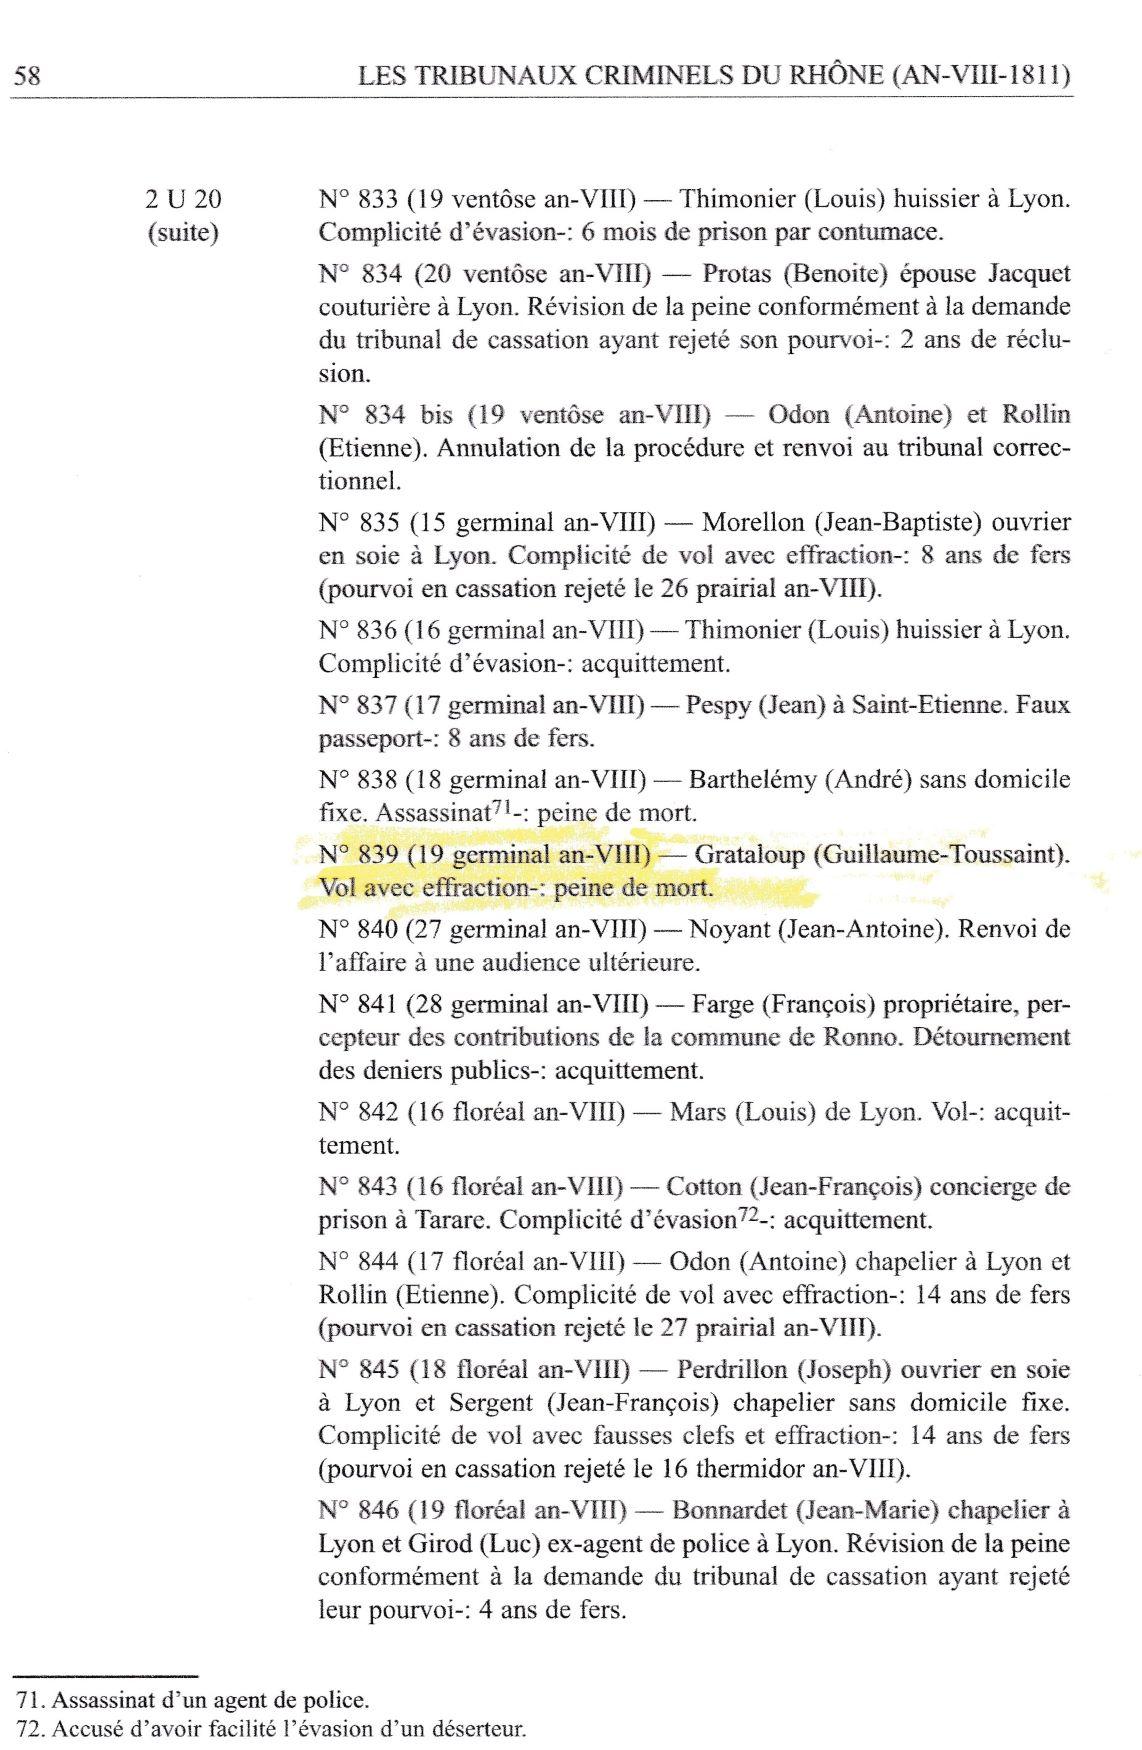 Tribunaux criminels du rhone an viii 1811 page 58 ref 2 u 20 suite pour transfert sur mon site